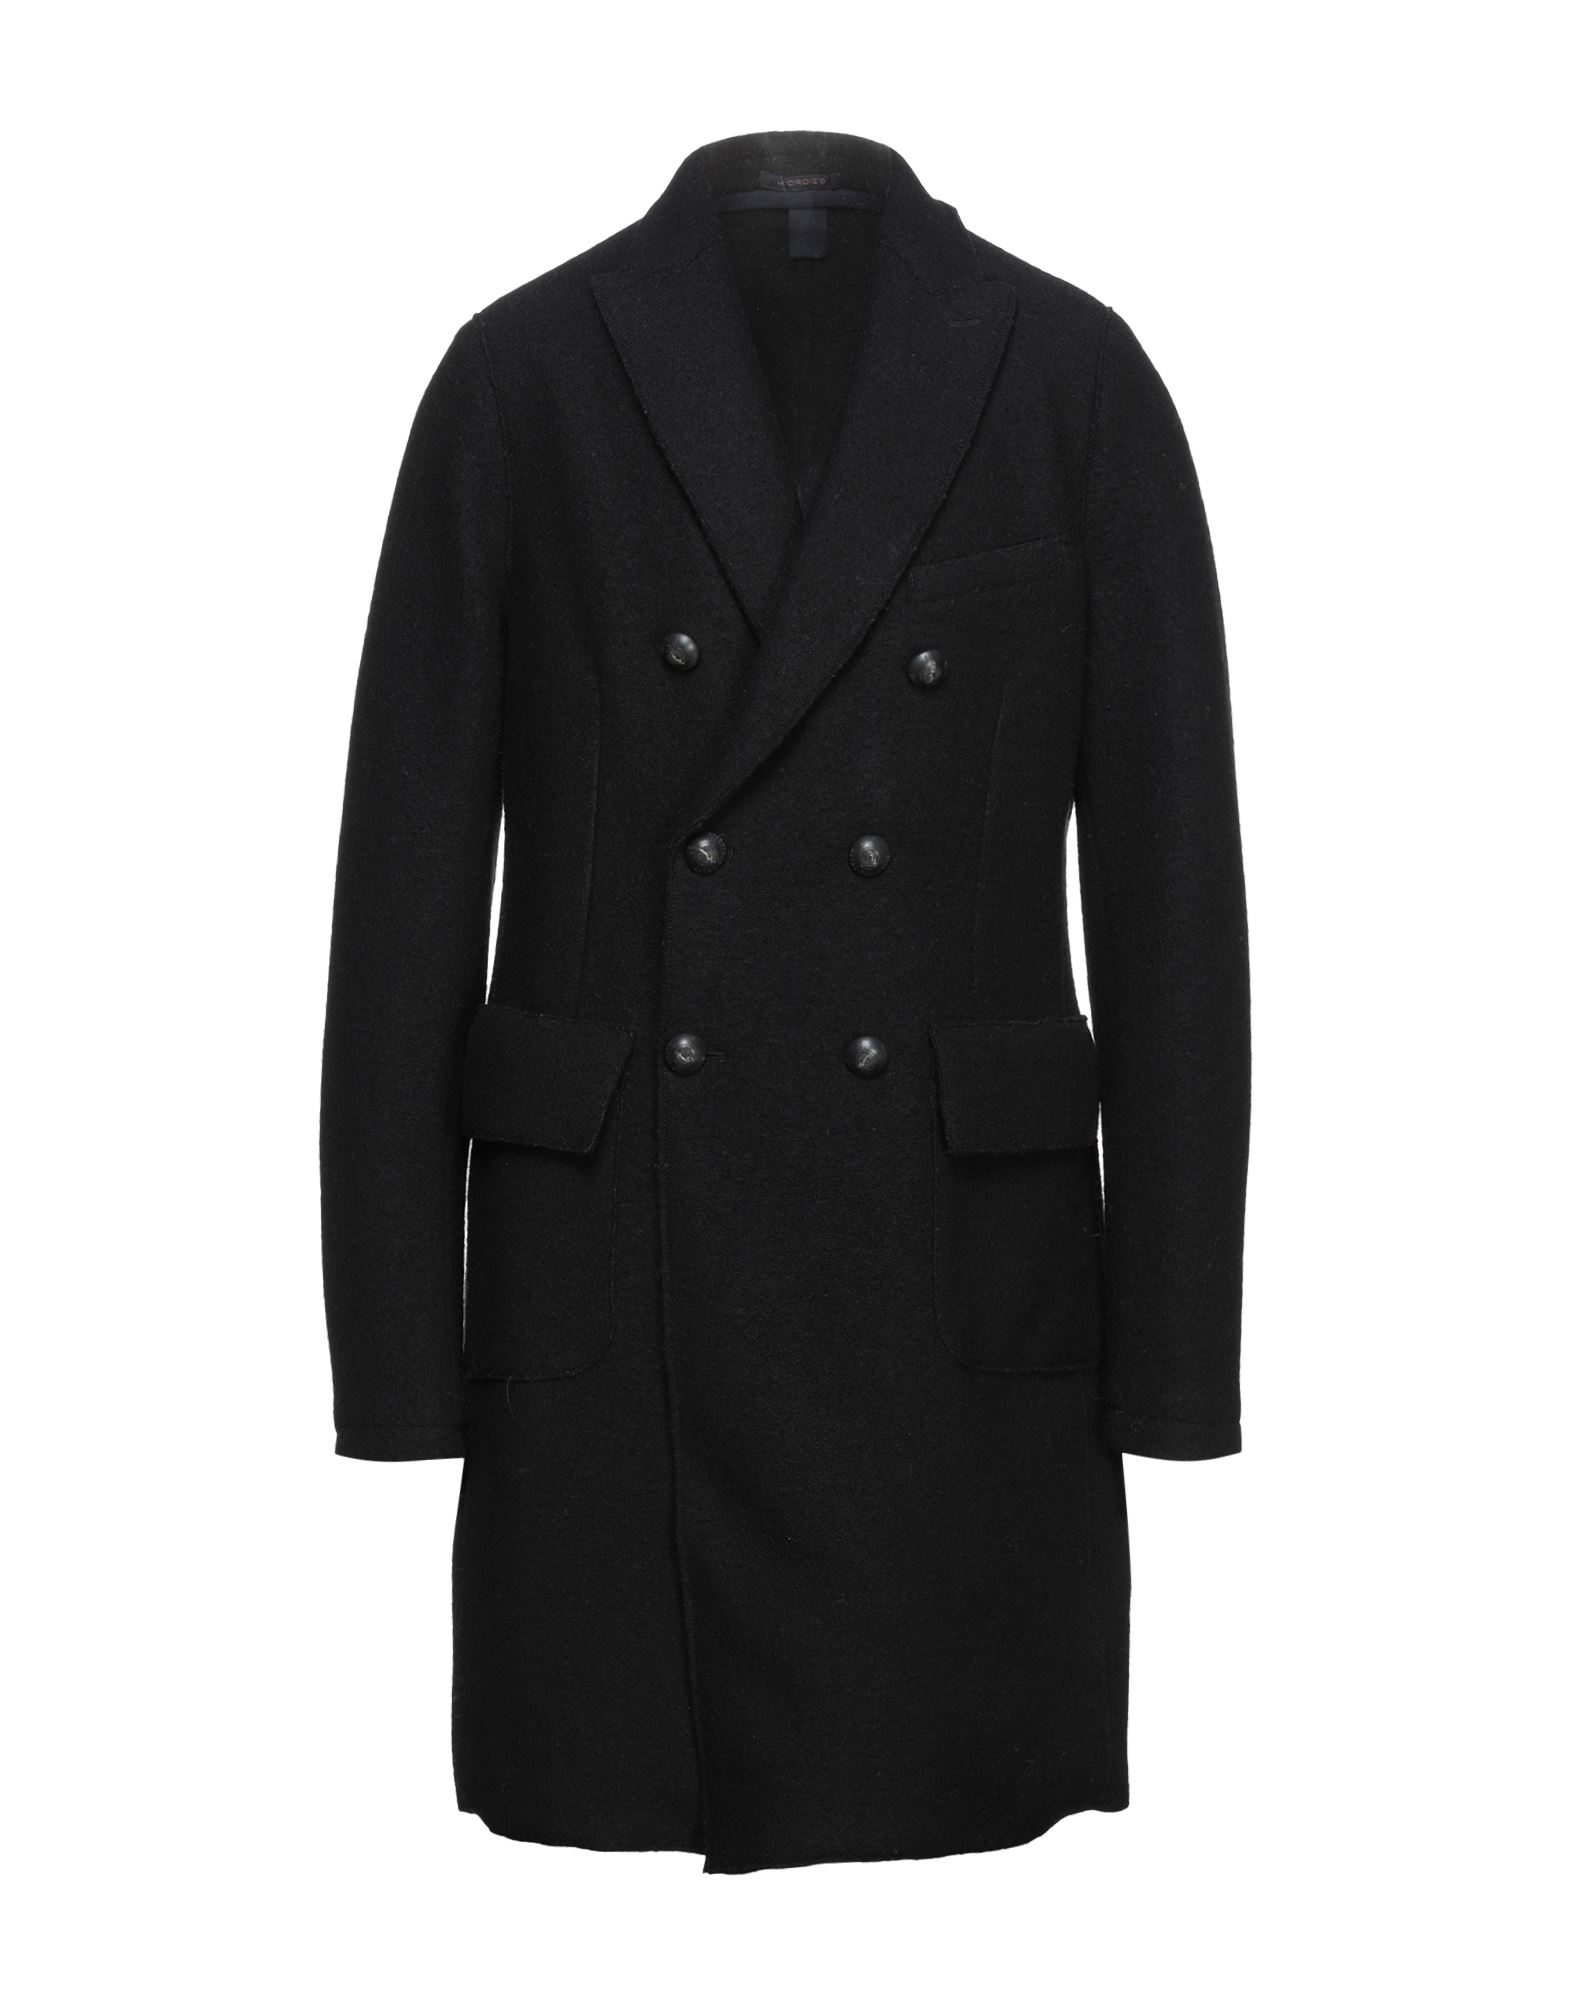 Jeordie's Coats In Black